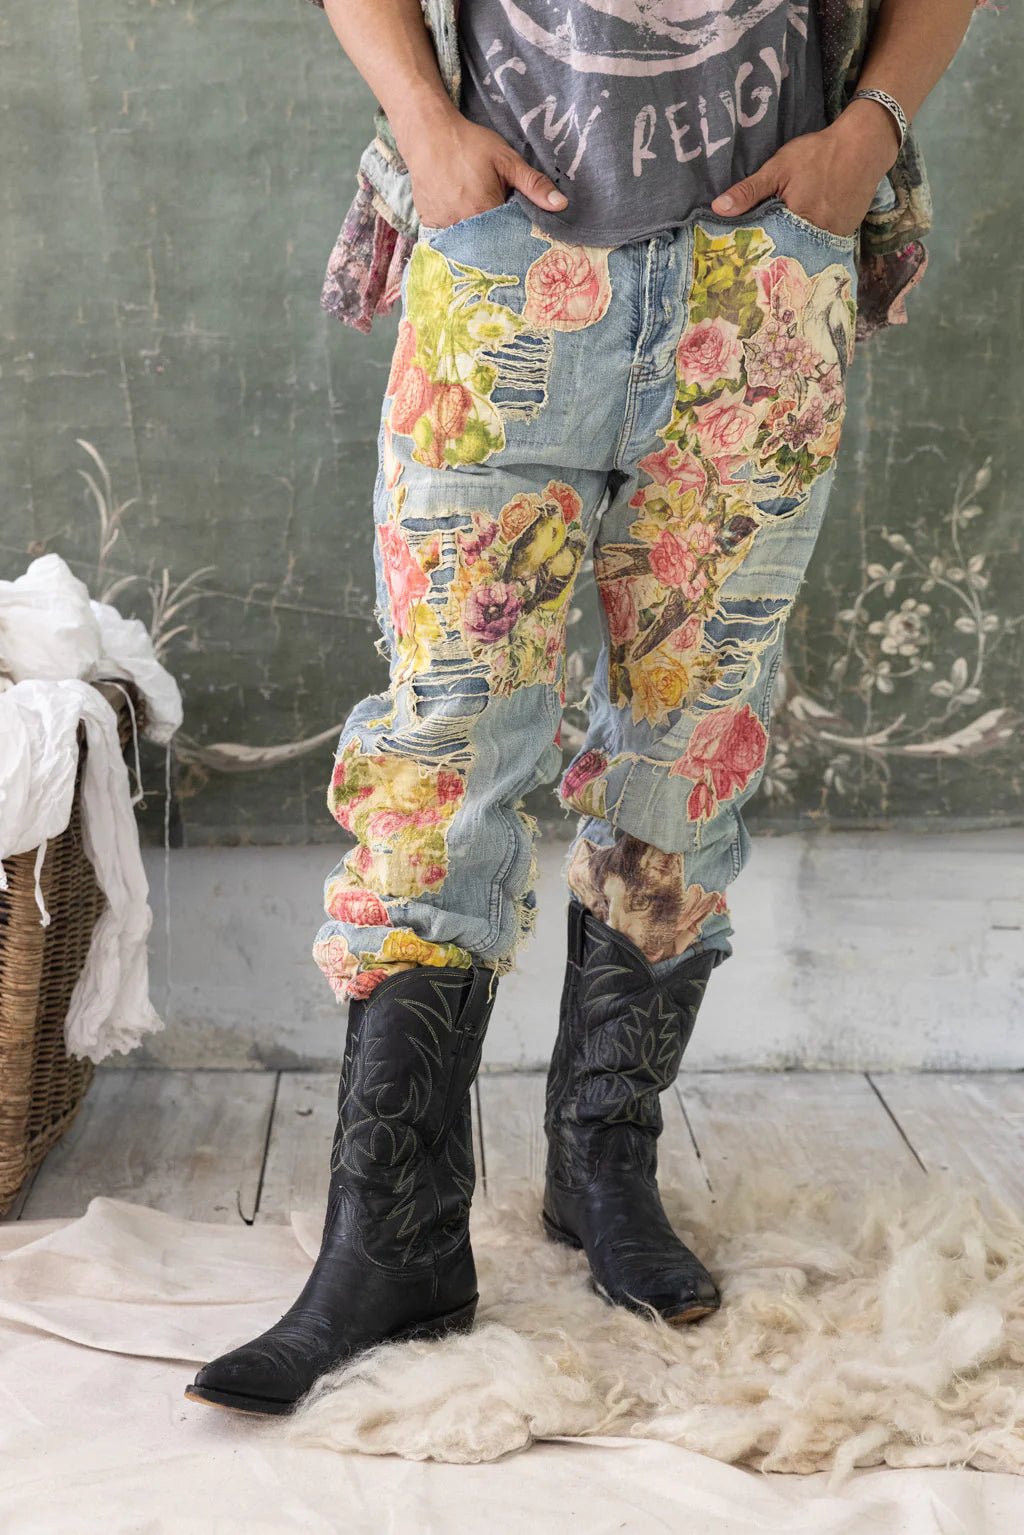 Floral Applique Miner Denim Pants 371 - Washed IndigoMagnolia PearlPants